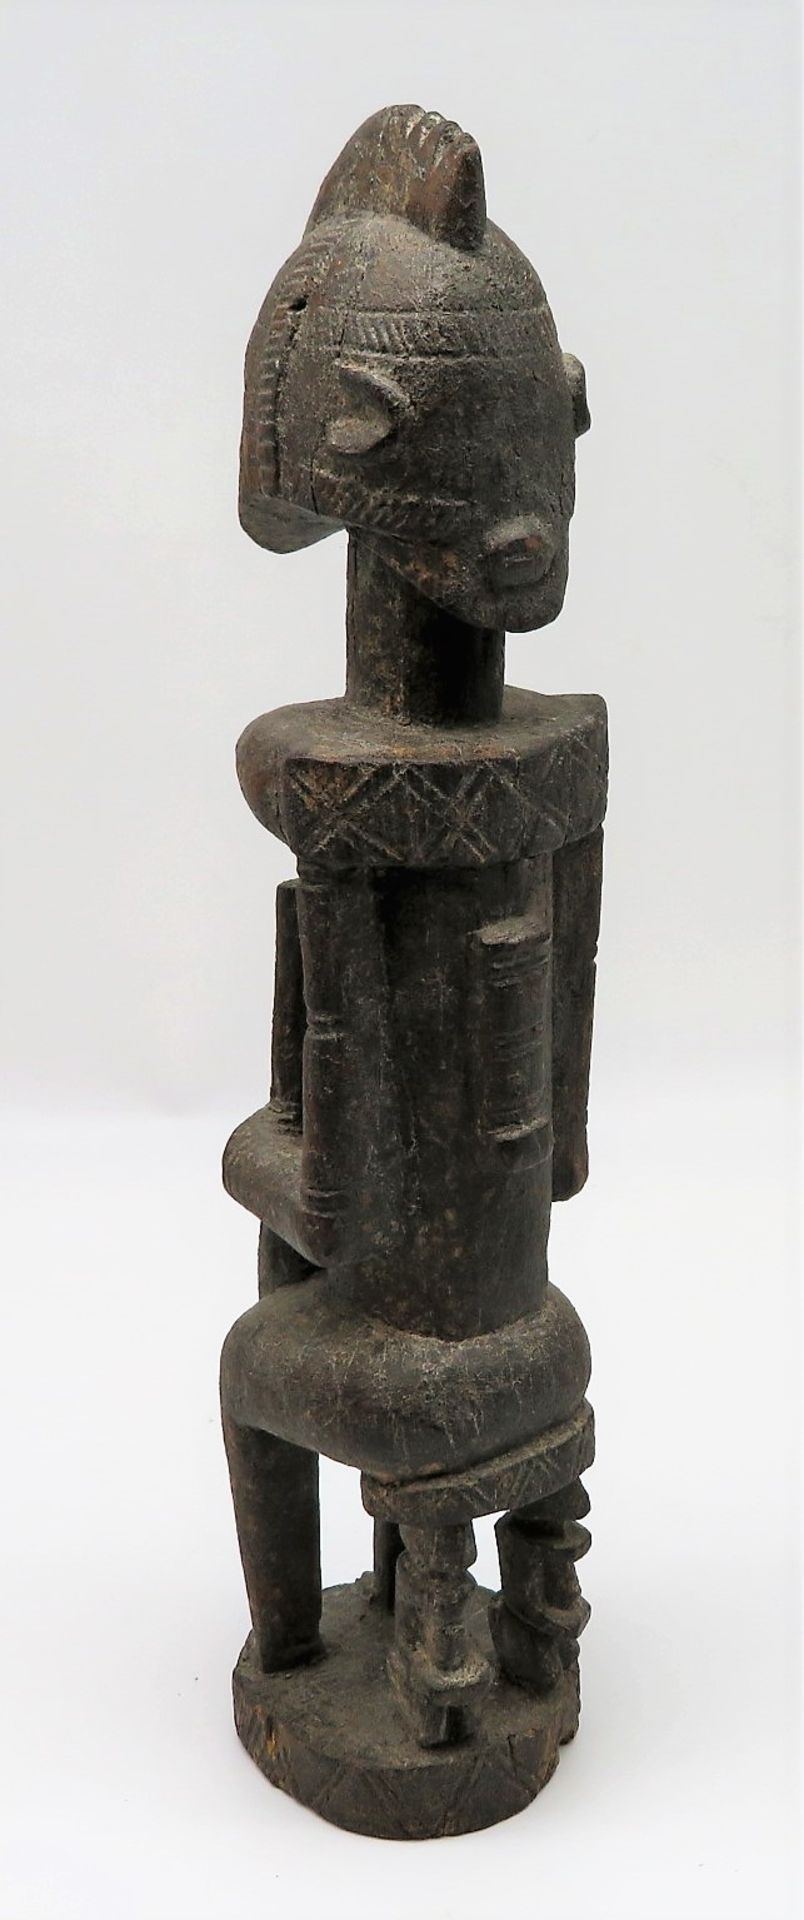 Fruchtbarkeitsfigur, Afrika, Mali, Dogon, Holz geschnitzt, Reste von Fassung, h 43 cm, d 9,5 cm. - Bild 2 aus 2